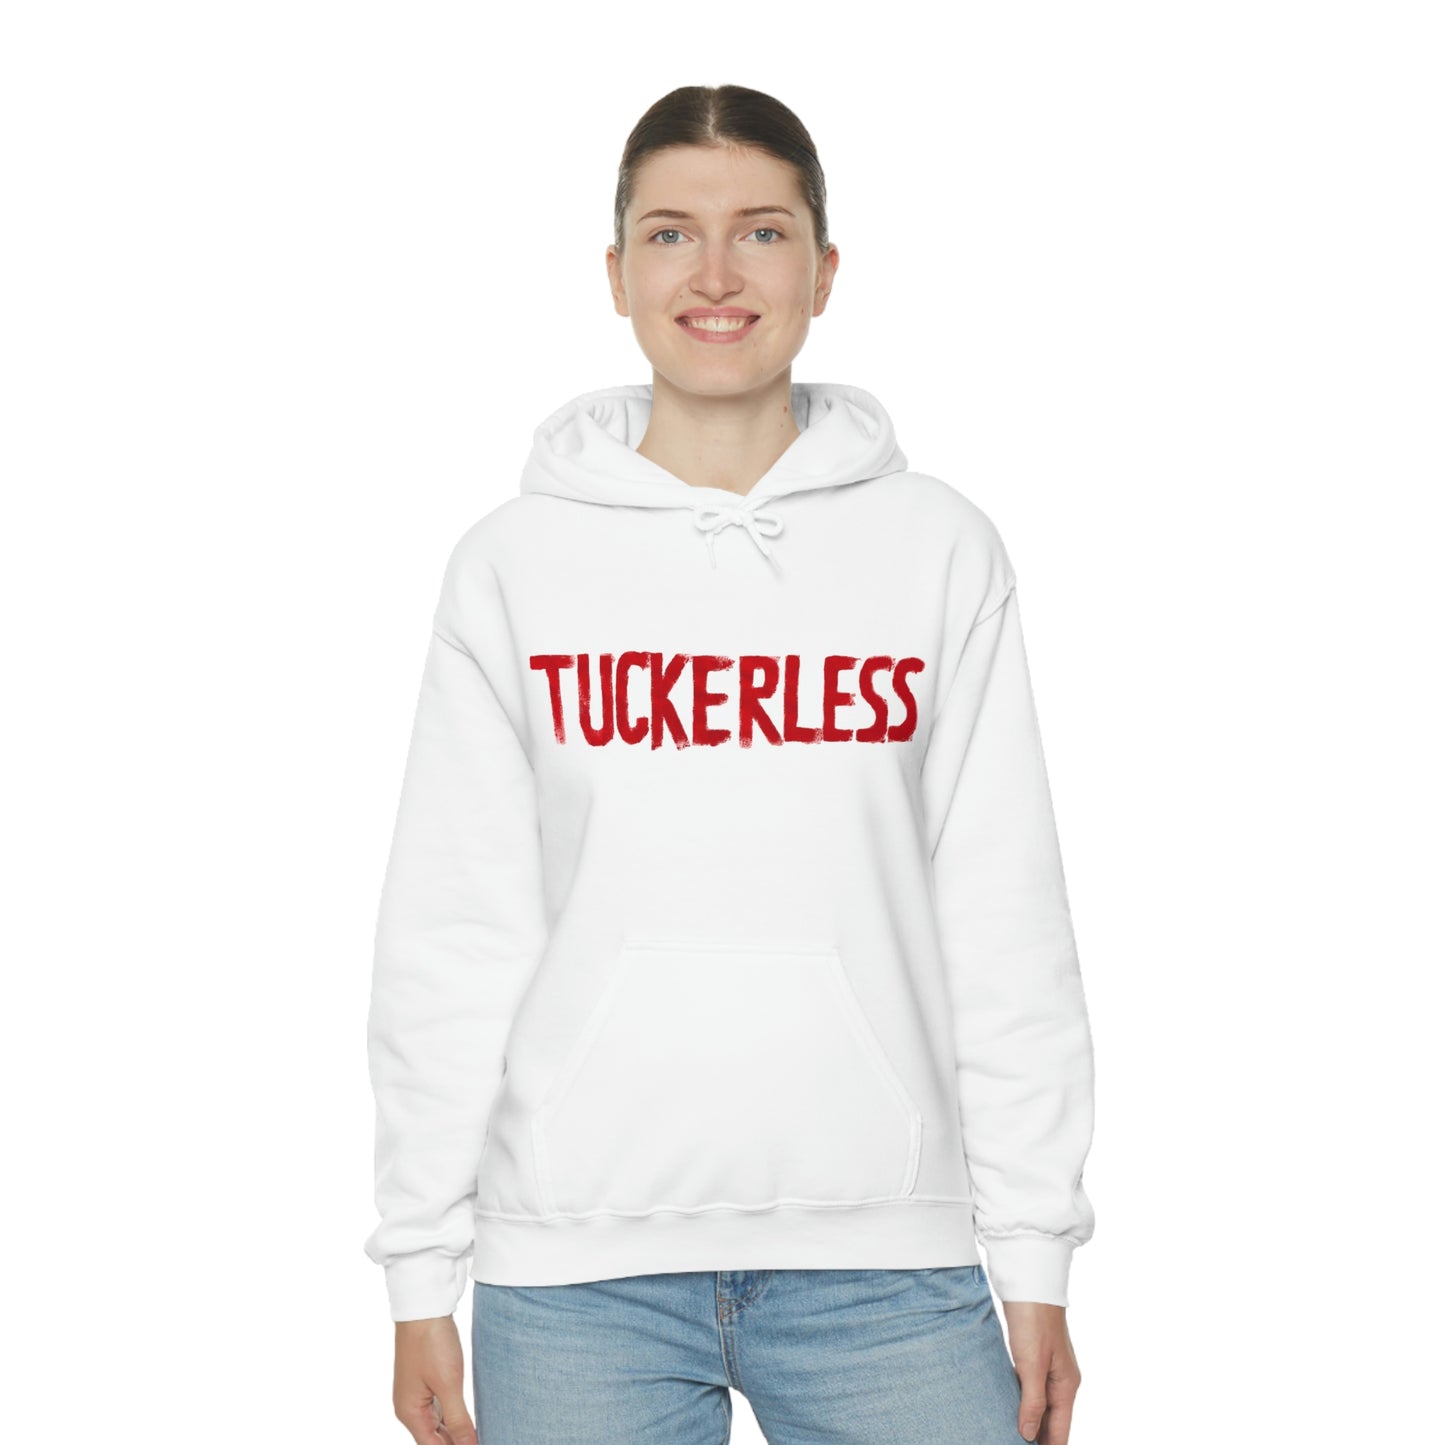 Unisex "Tuckerless" Hooded Sweatshirt